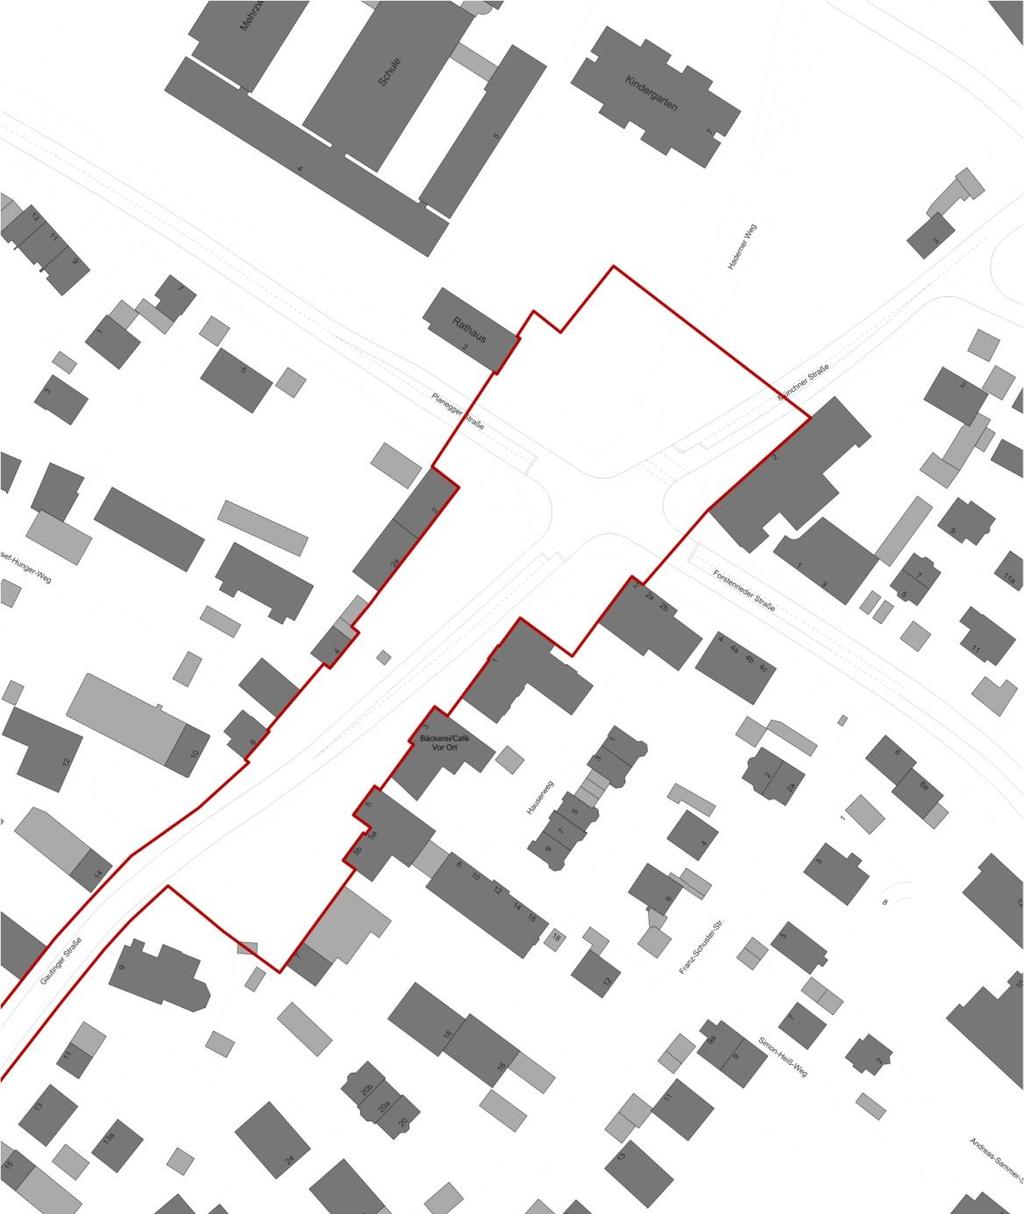 Themen zur Gestaltung der Ortsmitte Aufenthaltsqualität / Platzgestaltung Verbindung zwischen dem Bereich an der Gautinger Straße und dem